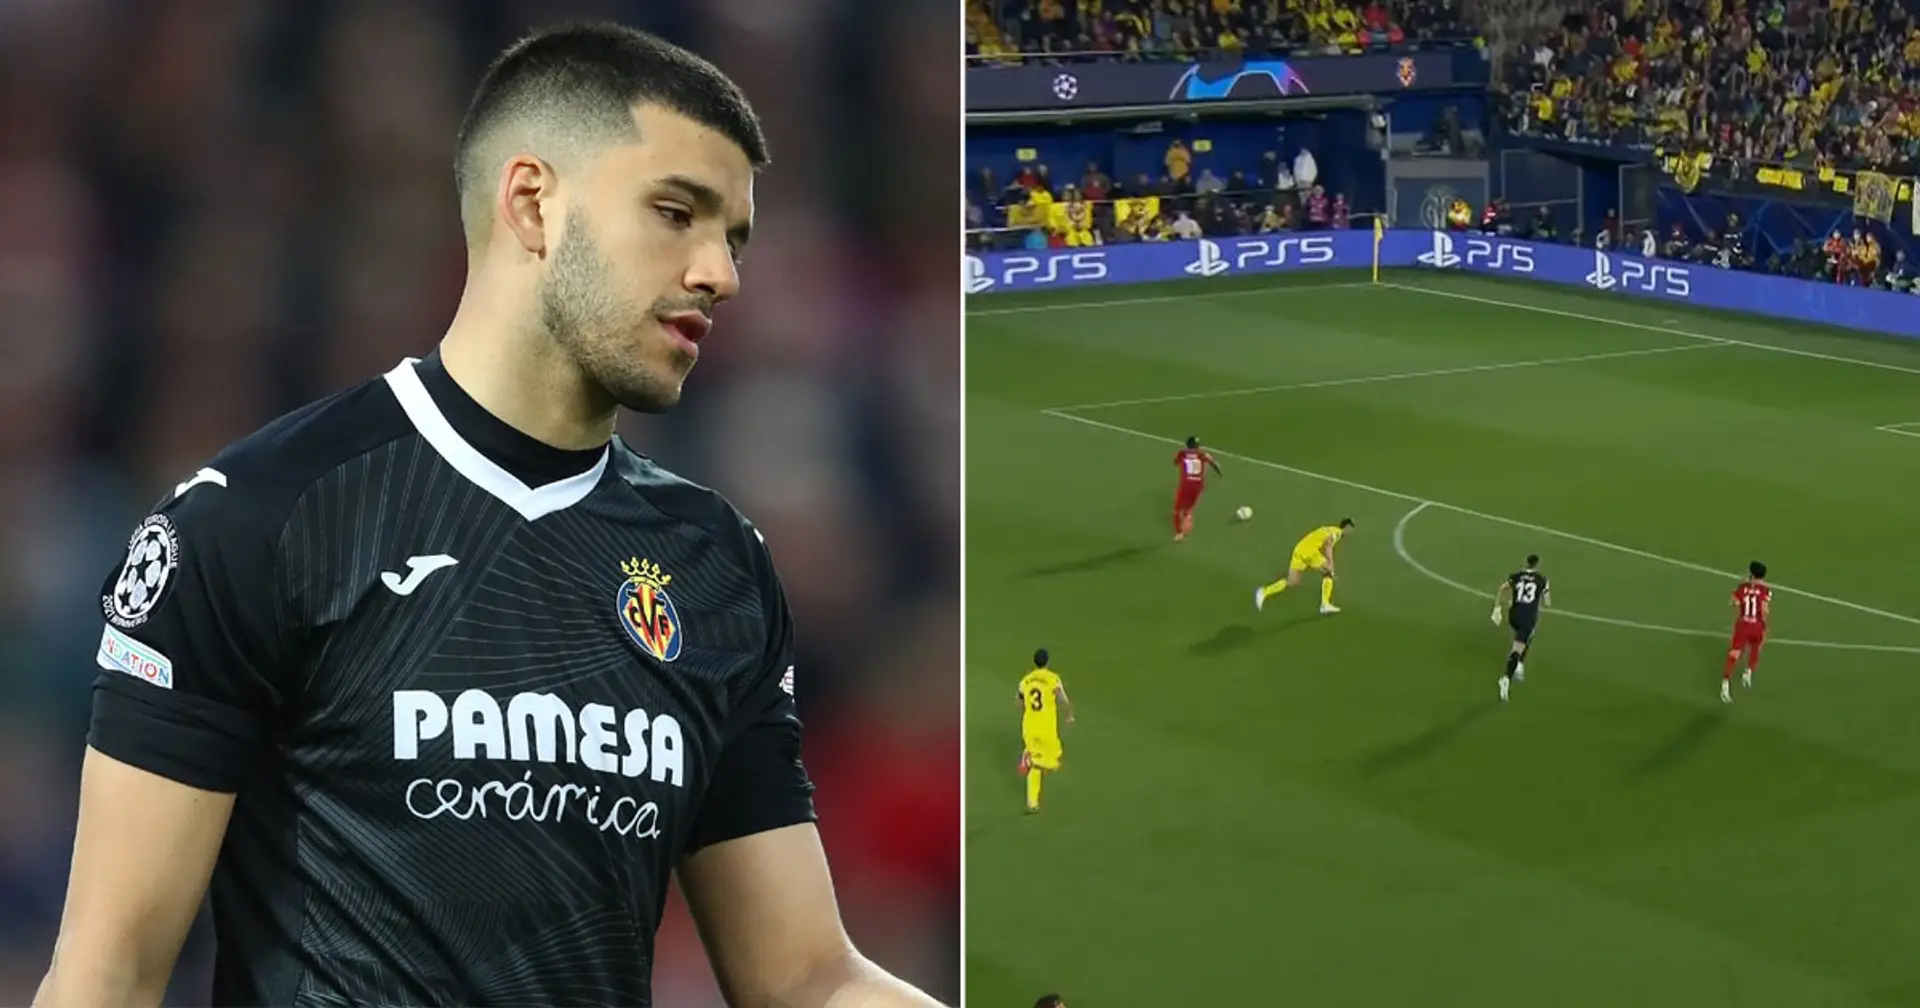 Villarreal goalkeeper Rulli sets embarrassing record after horrific display vs Liverpool